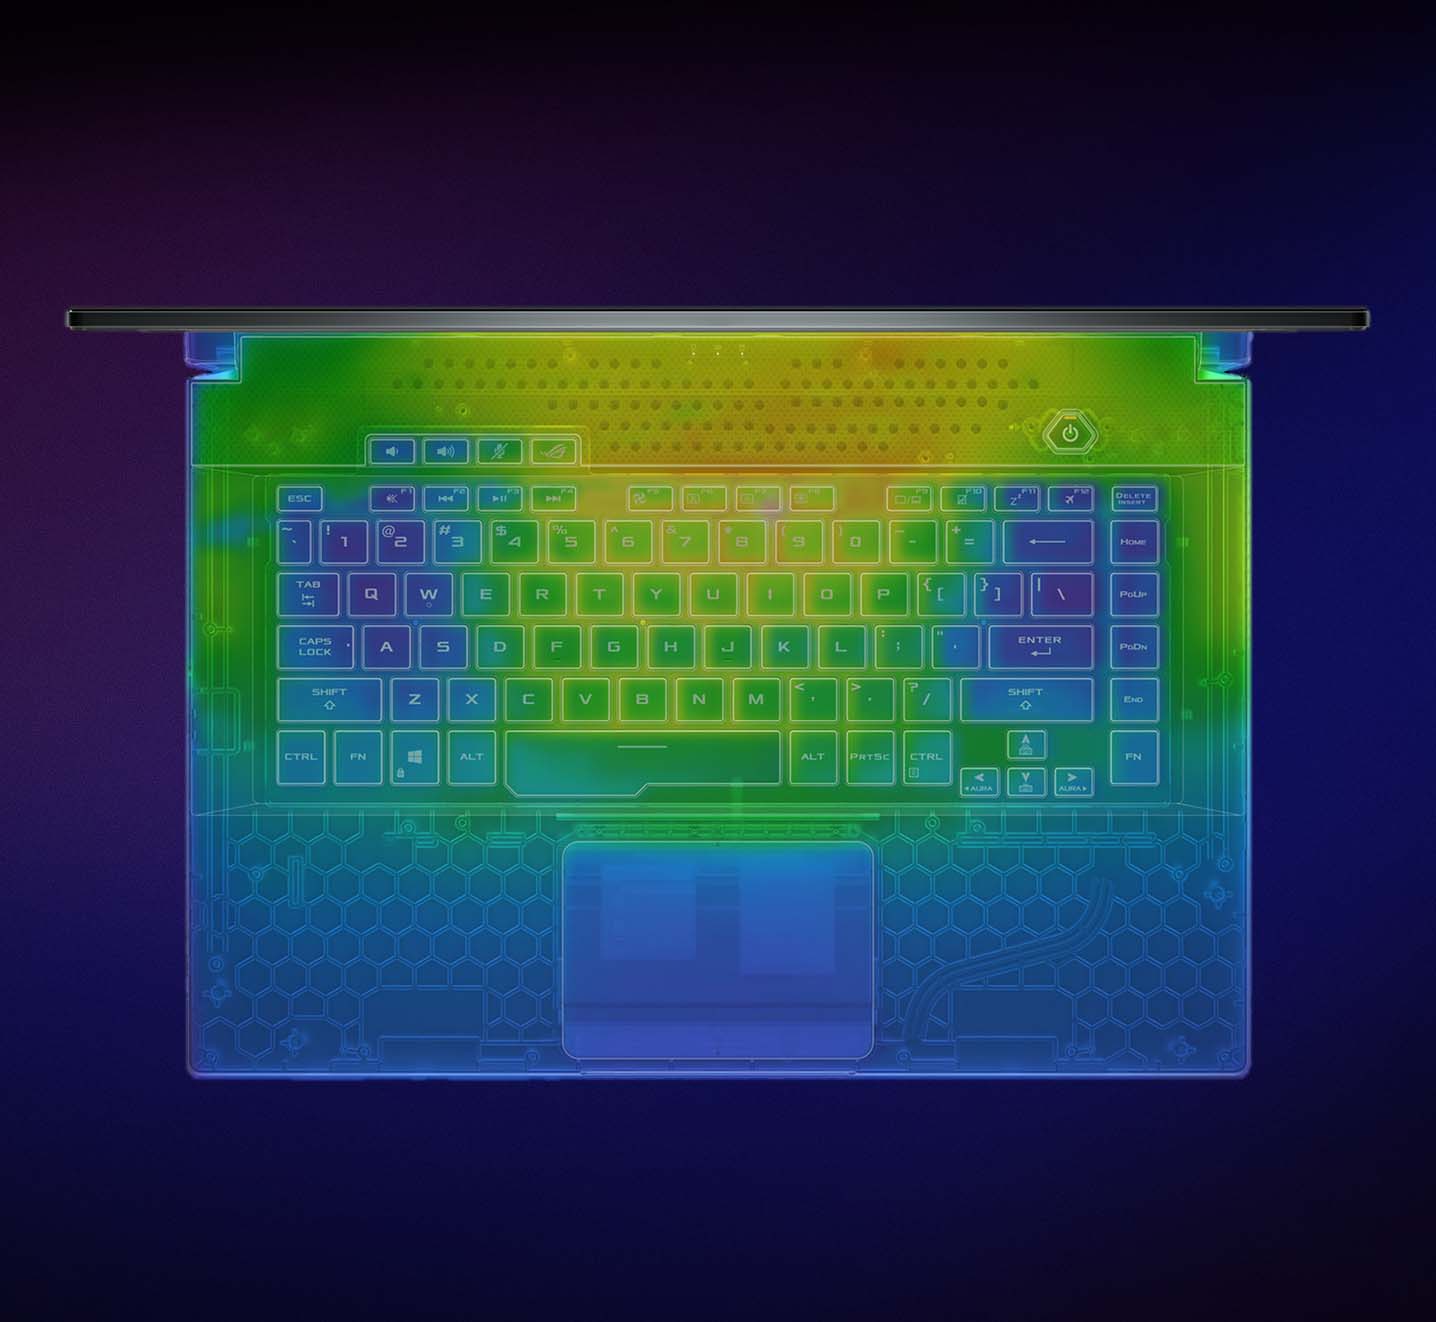 Värmebild av Strix G17-tangentbordet.